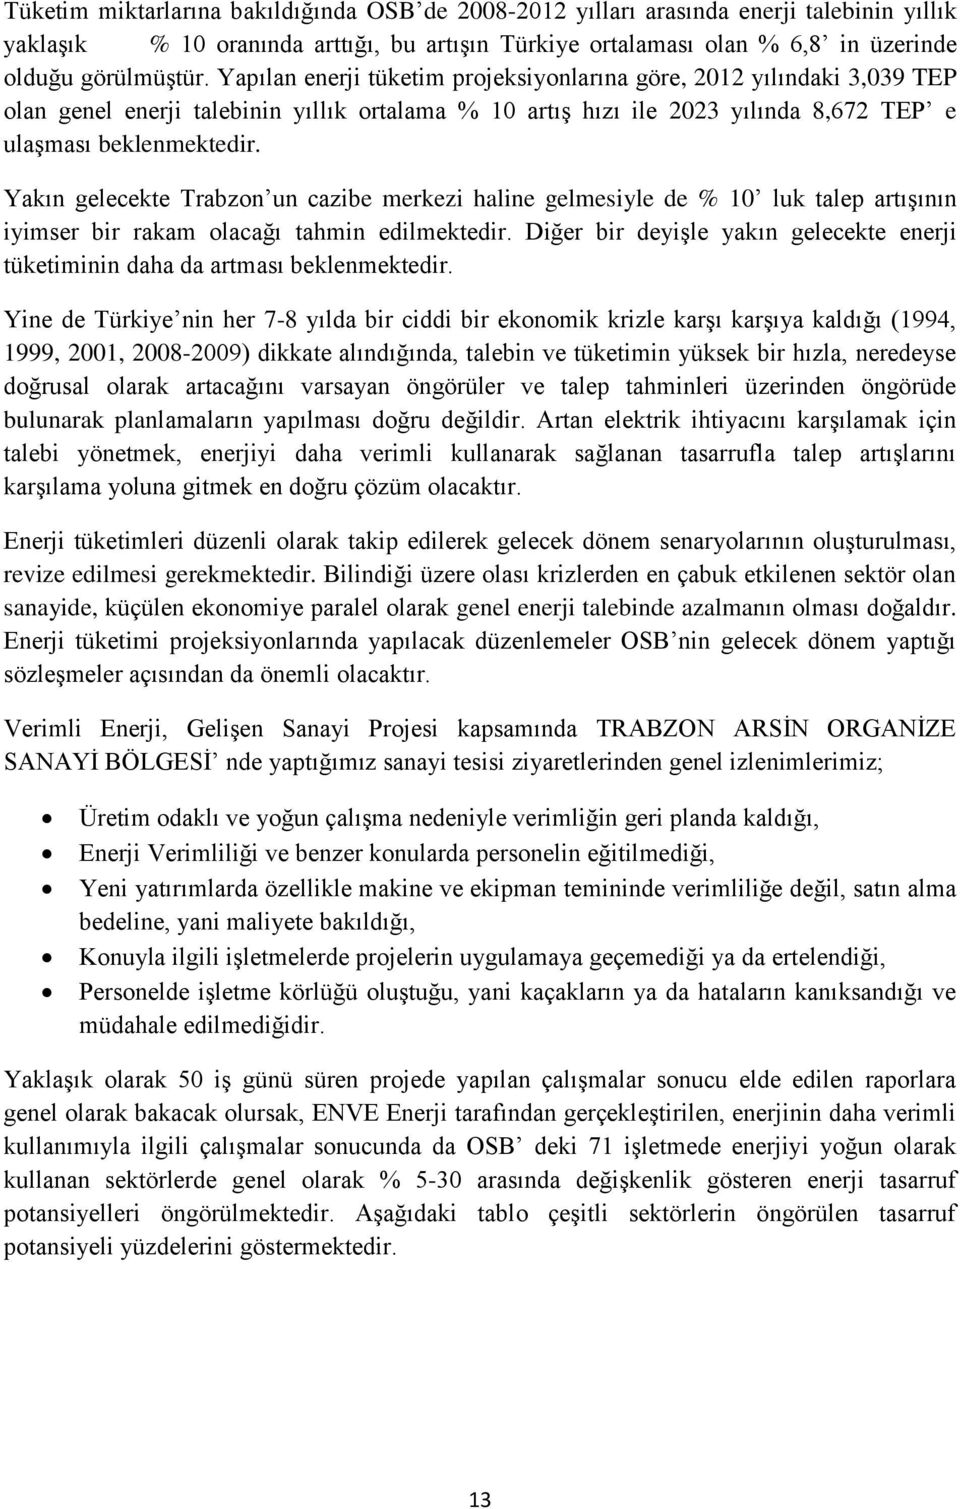 Yakın gelecekte Trabzon un cazibe merkezi haline gelmesiyle de % 10 luk talep artıģının iyimser bir rakam olacağı tahmin edilmektedir.